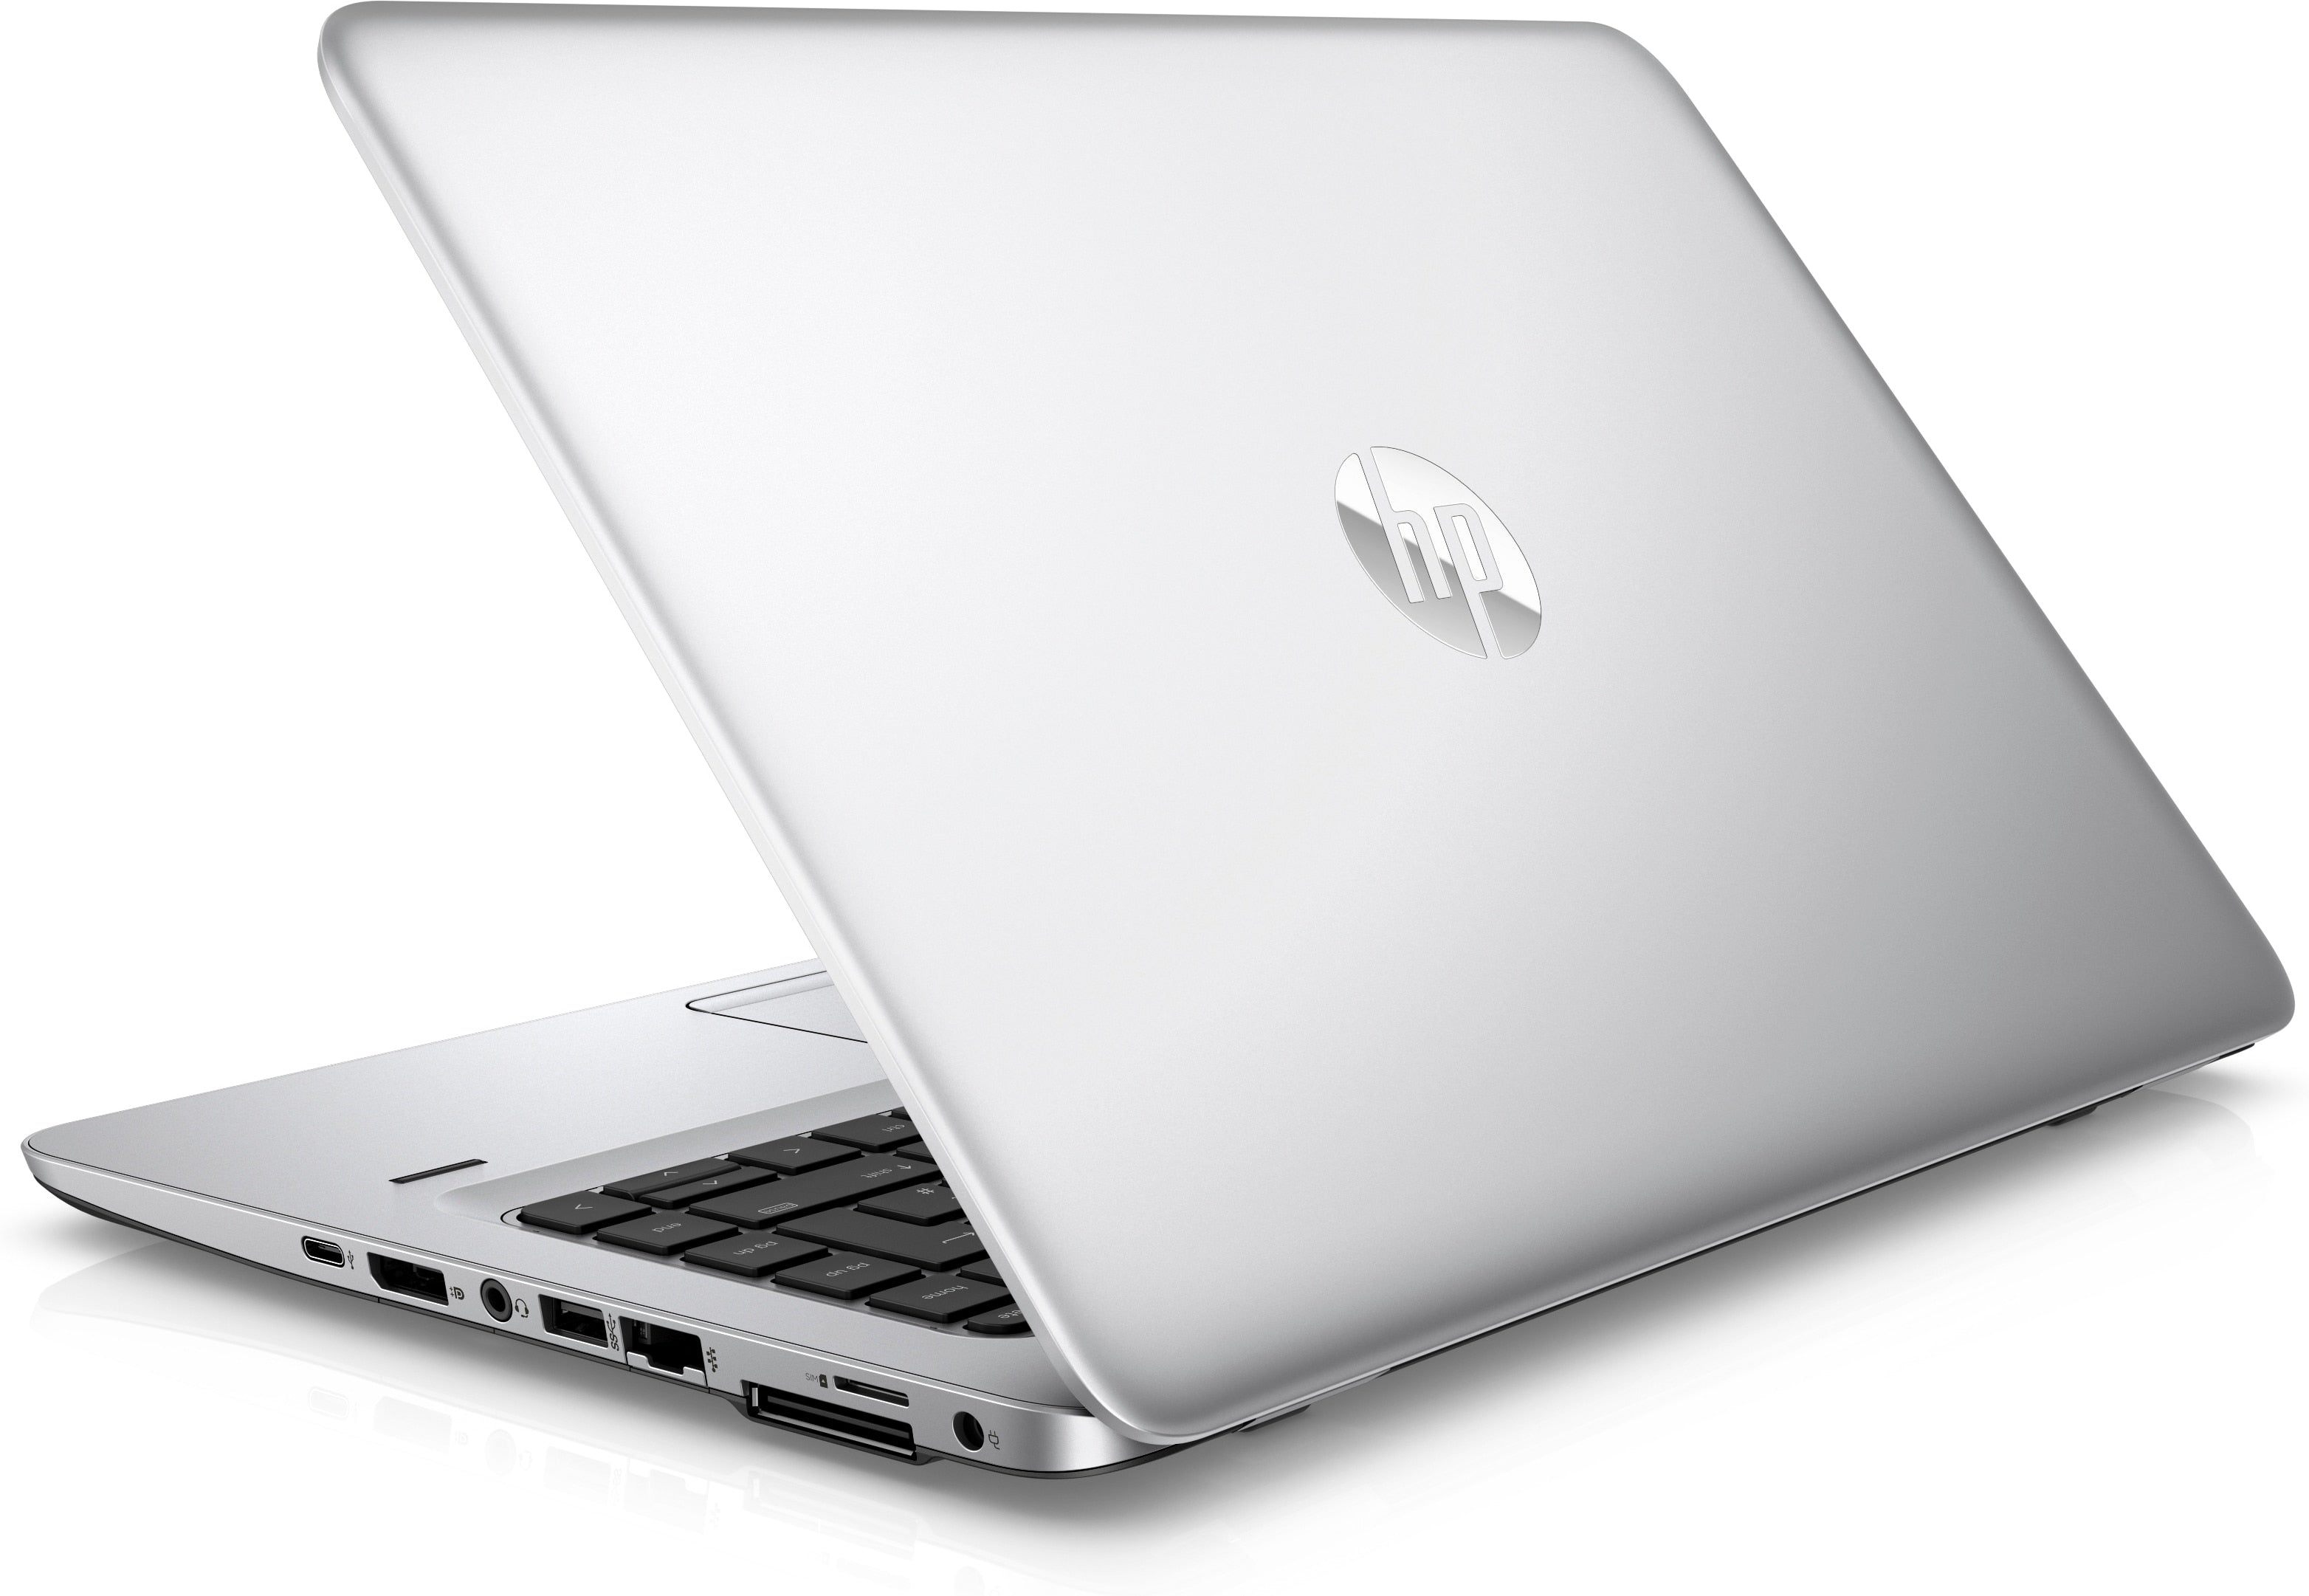 HP EliteBook 745 G4 Notebook side view